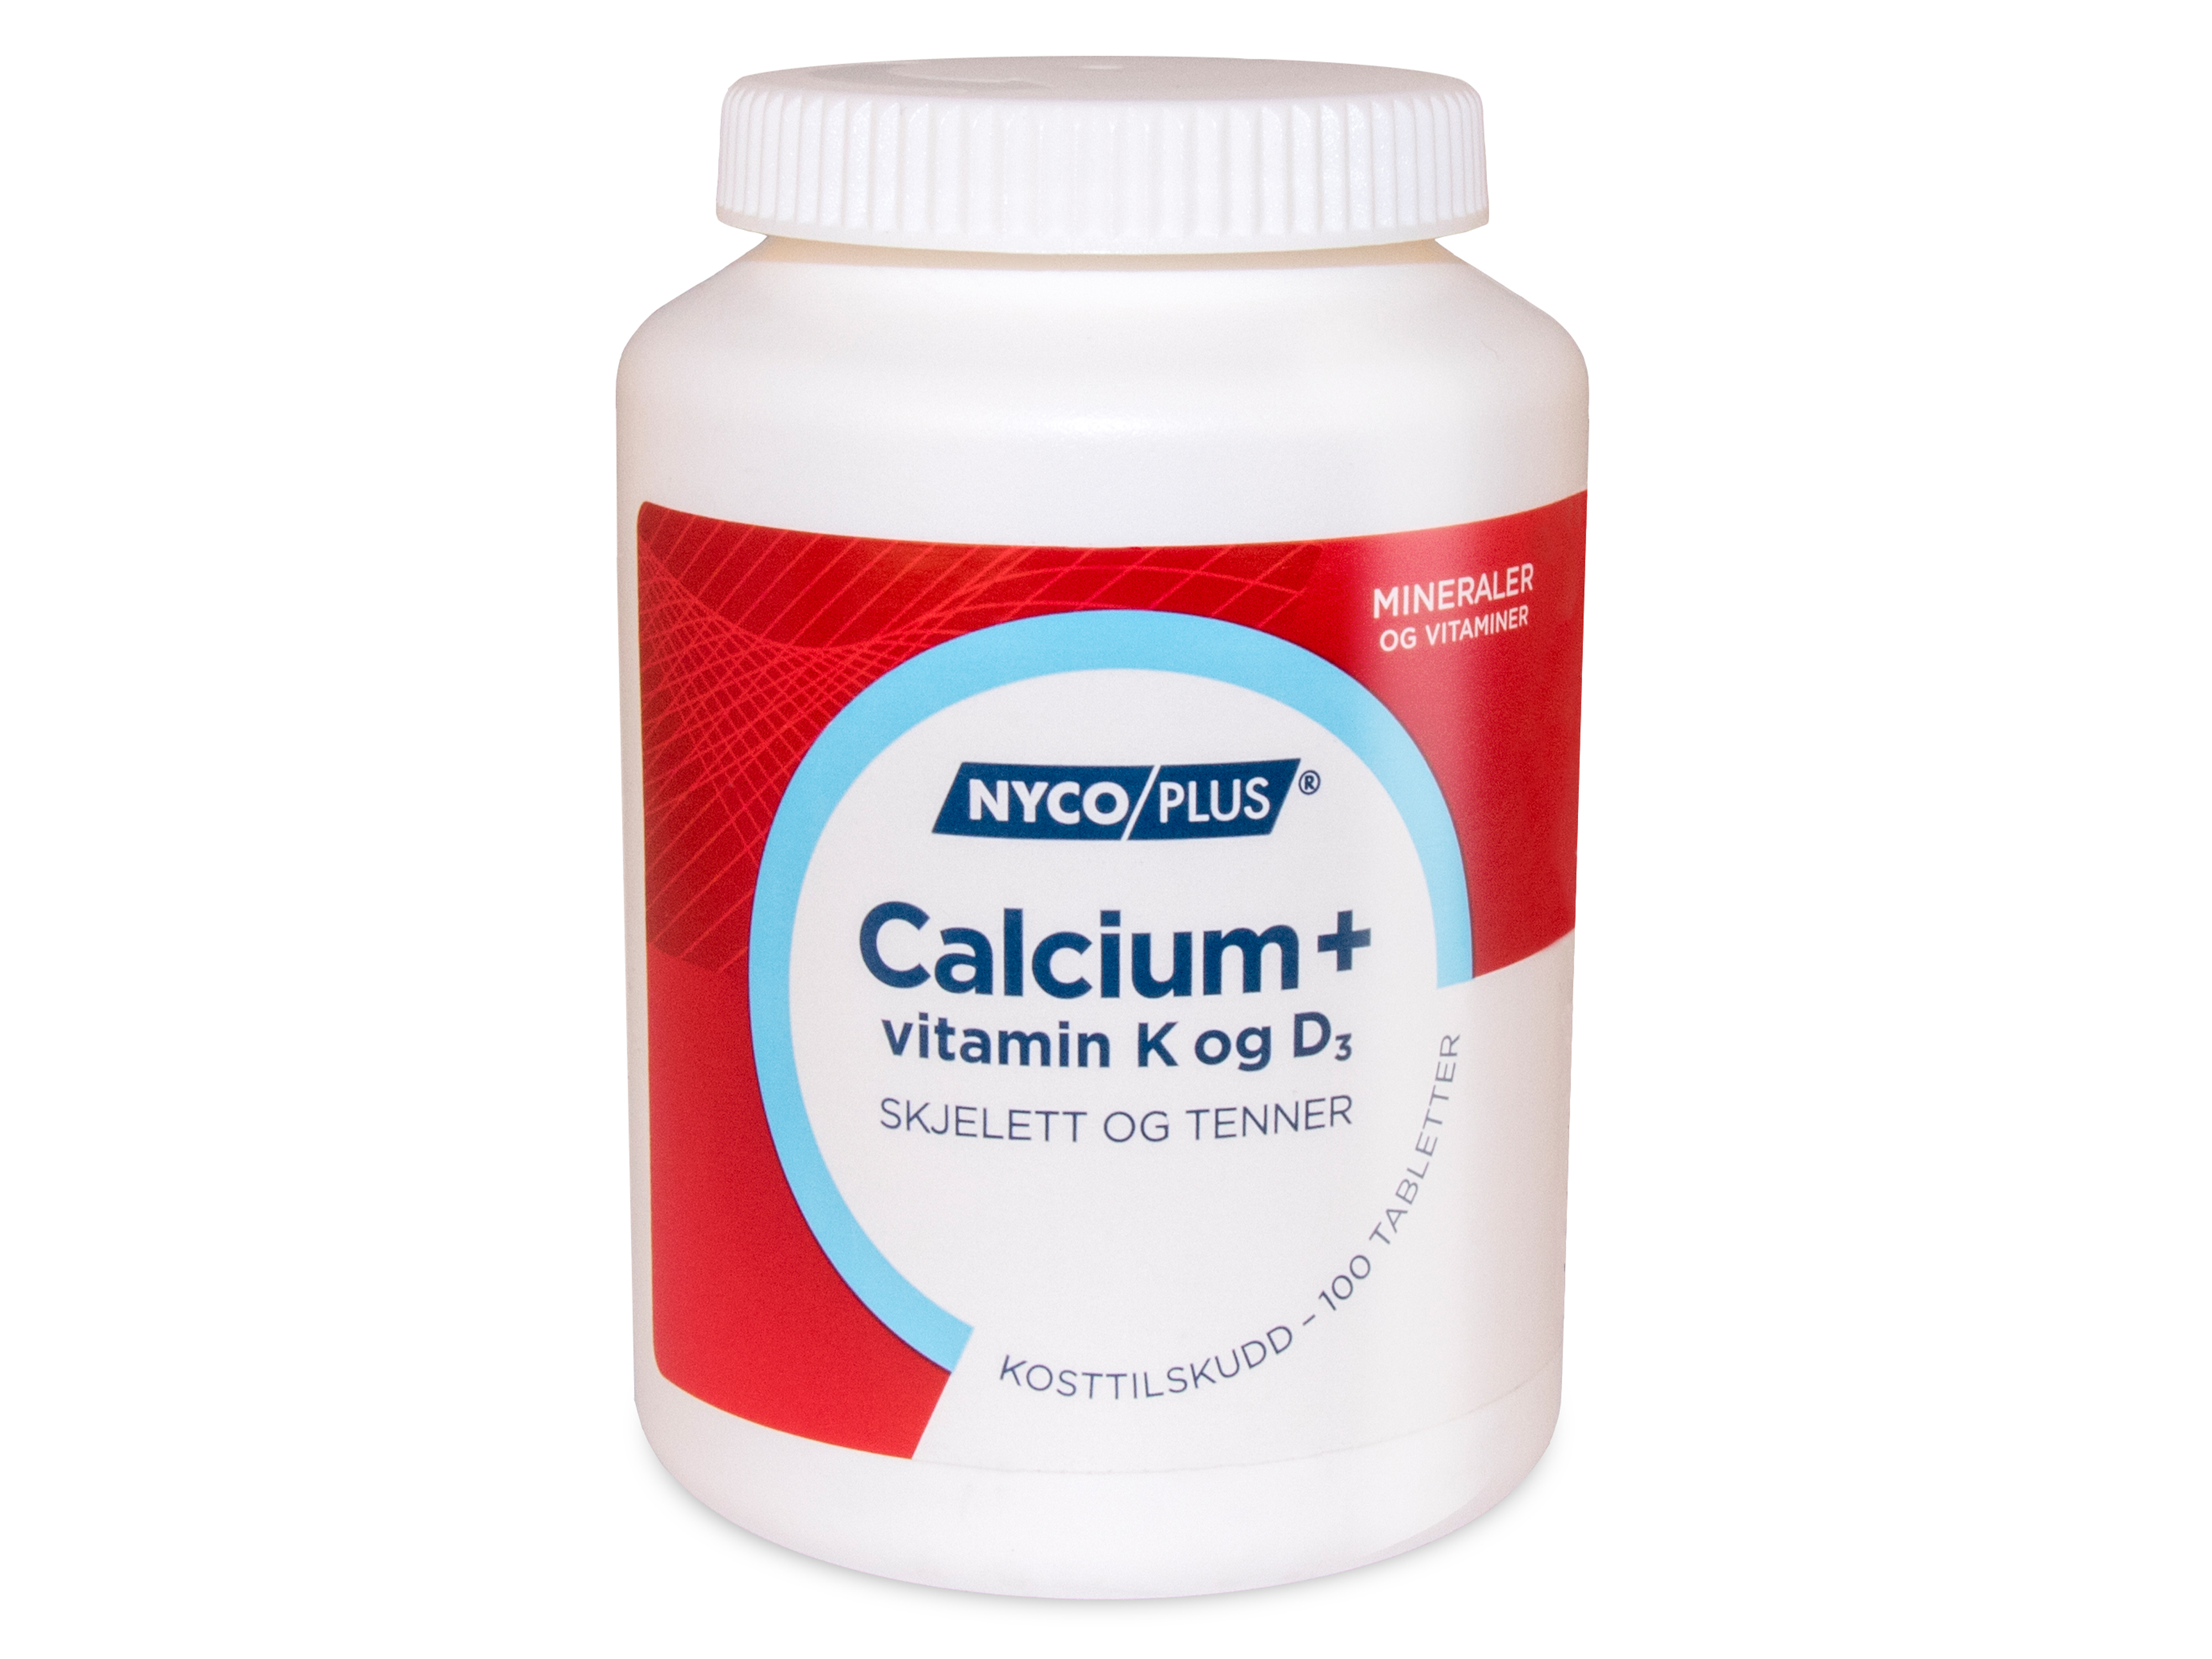 Nycoplus Calcium + vitamin K og D3, 100 tabletter